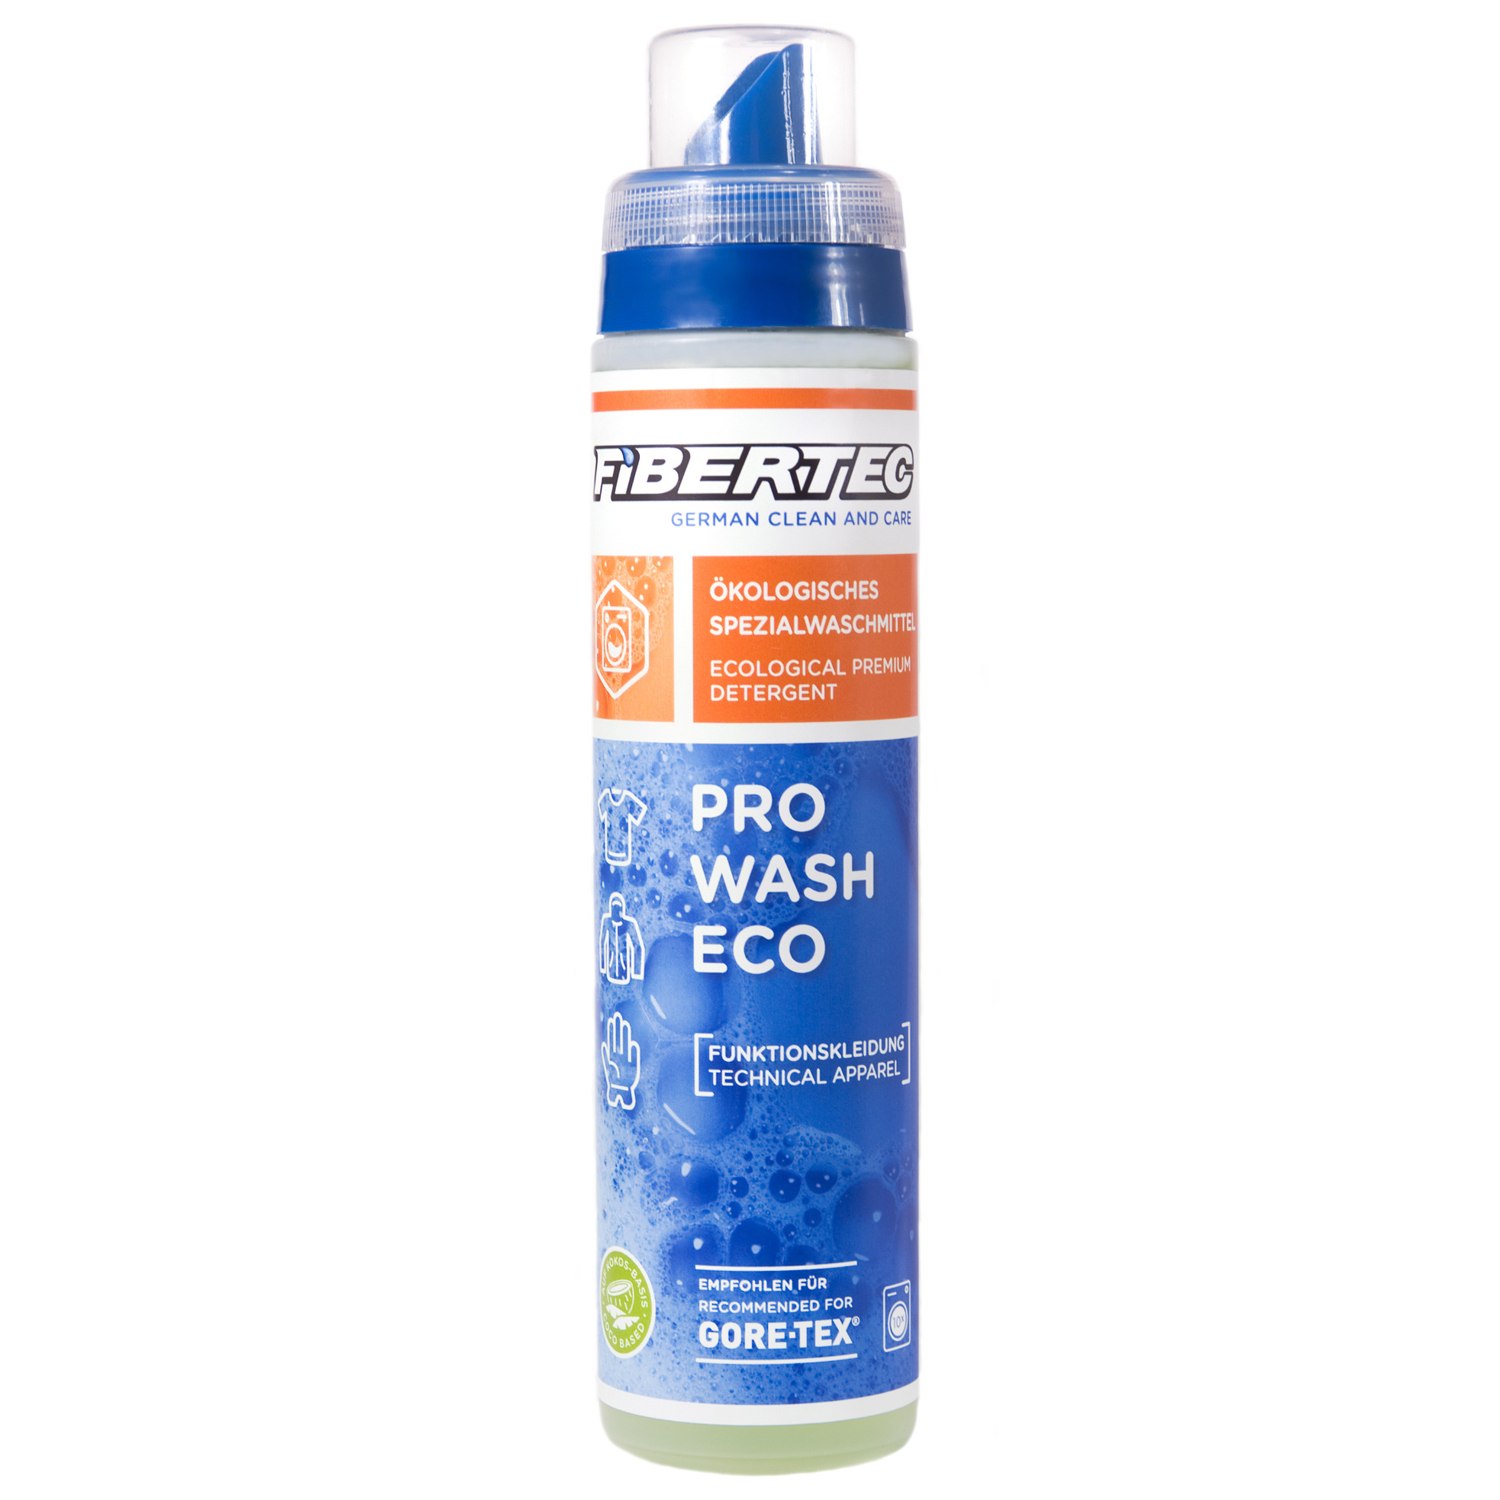 Productfoto van Fibertec Pro Wash Eco Detergent - 250ml